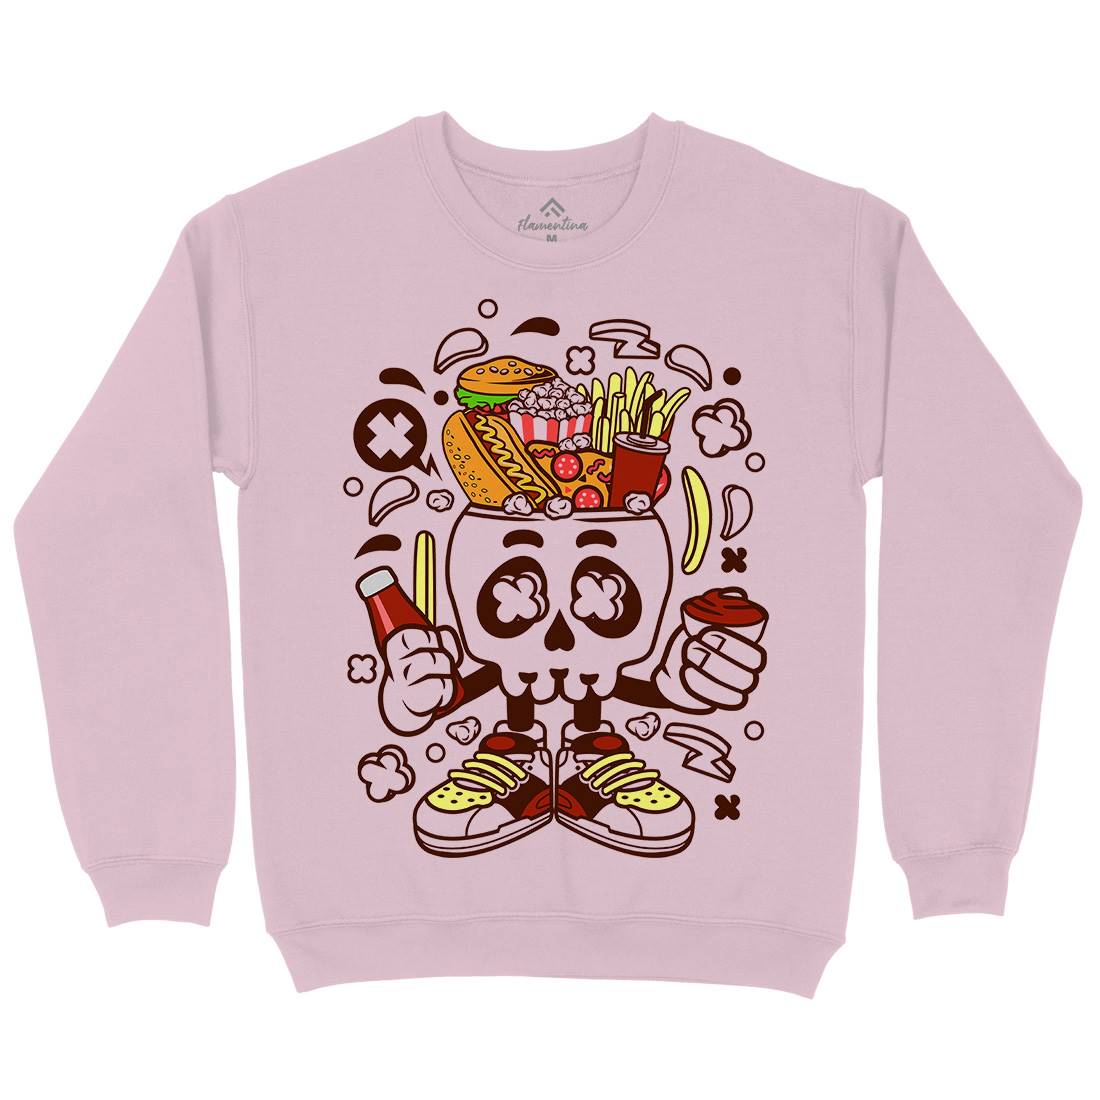 Junk Skull Kids Crew Neck Sweatshirt Food C157